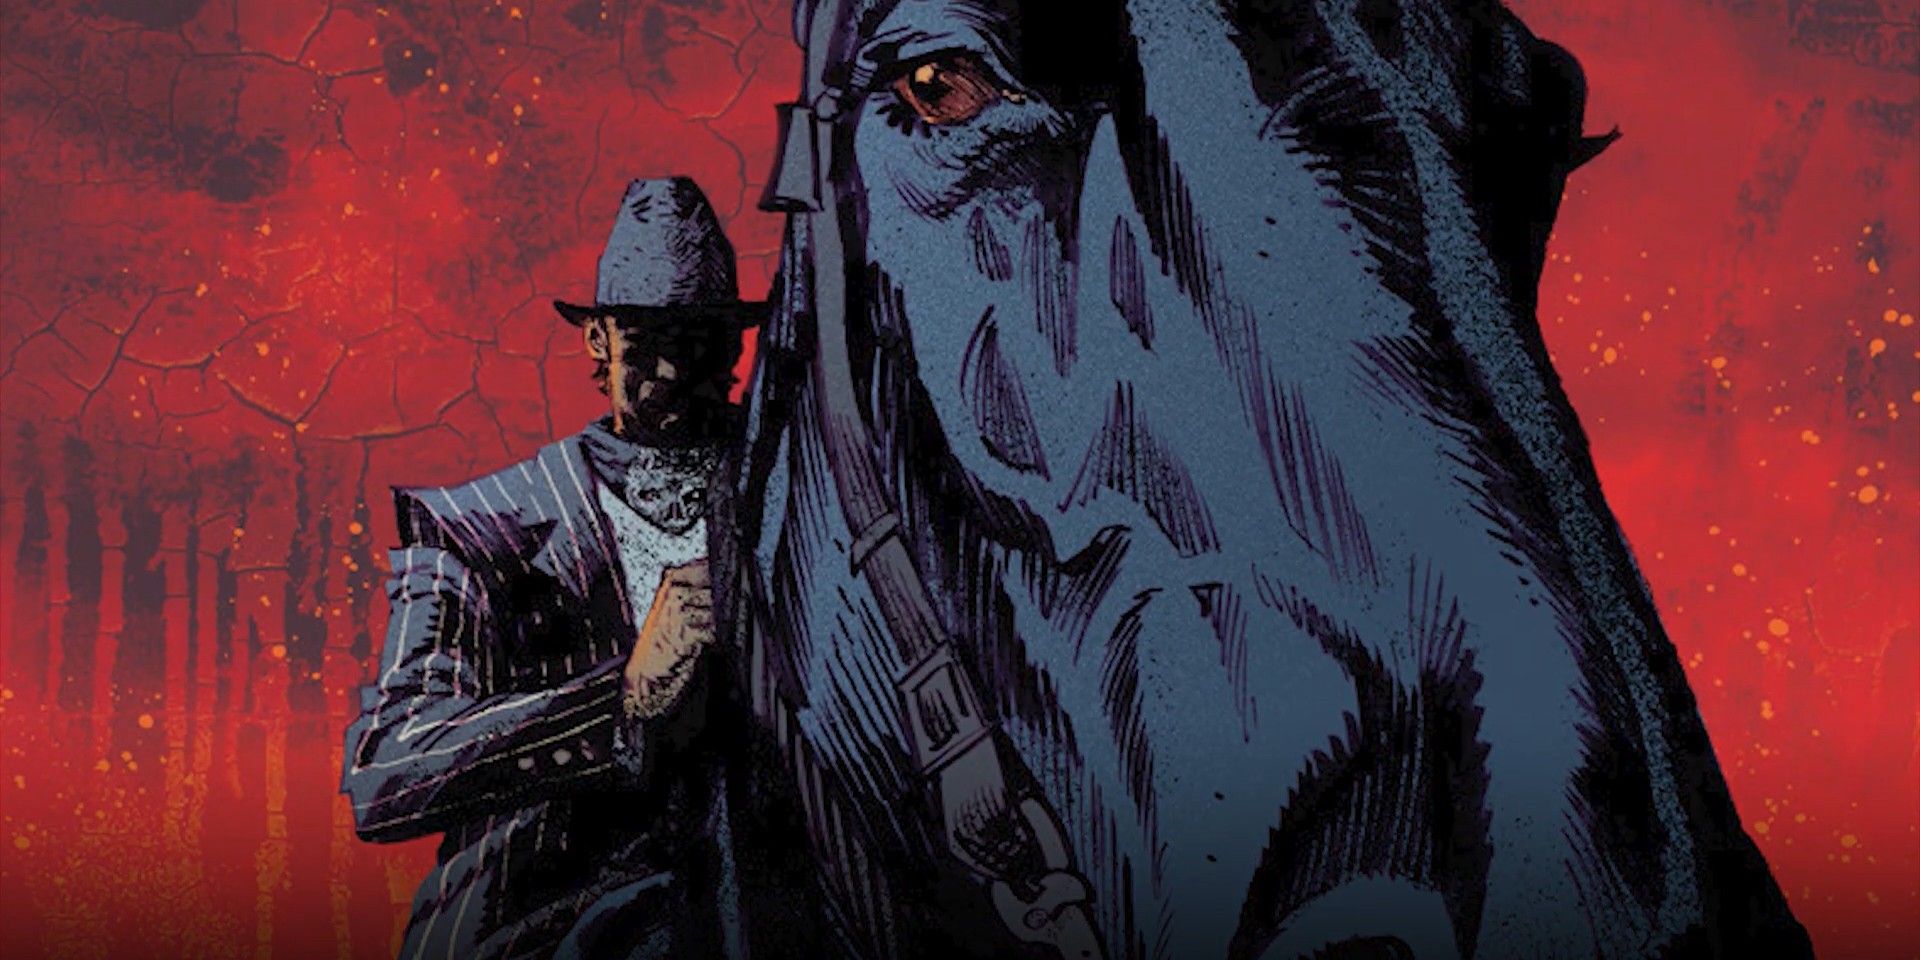 EXCLUSIVO: El western de terror CANARY de Scott Snyder obtiene un tráiler oficial